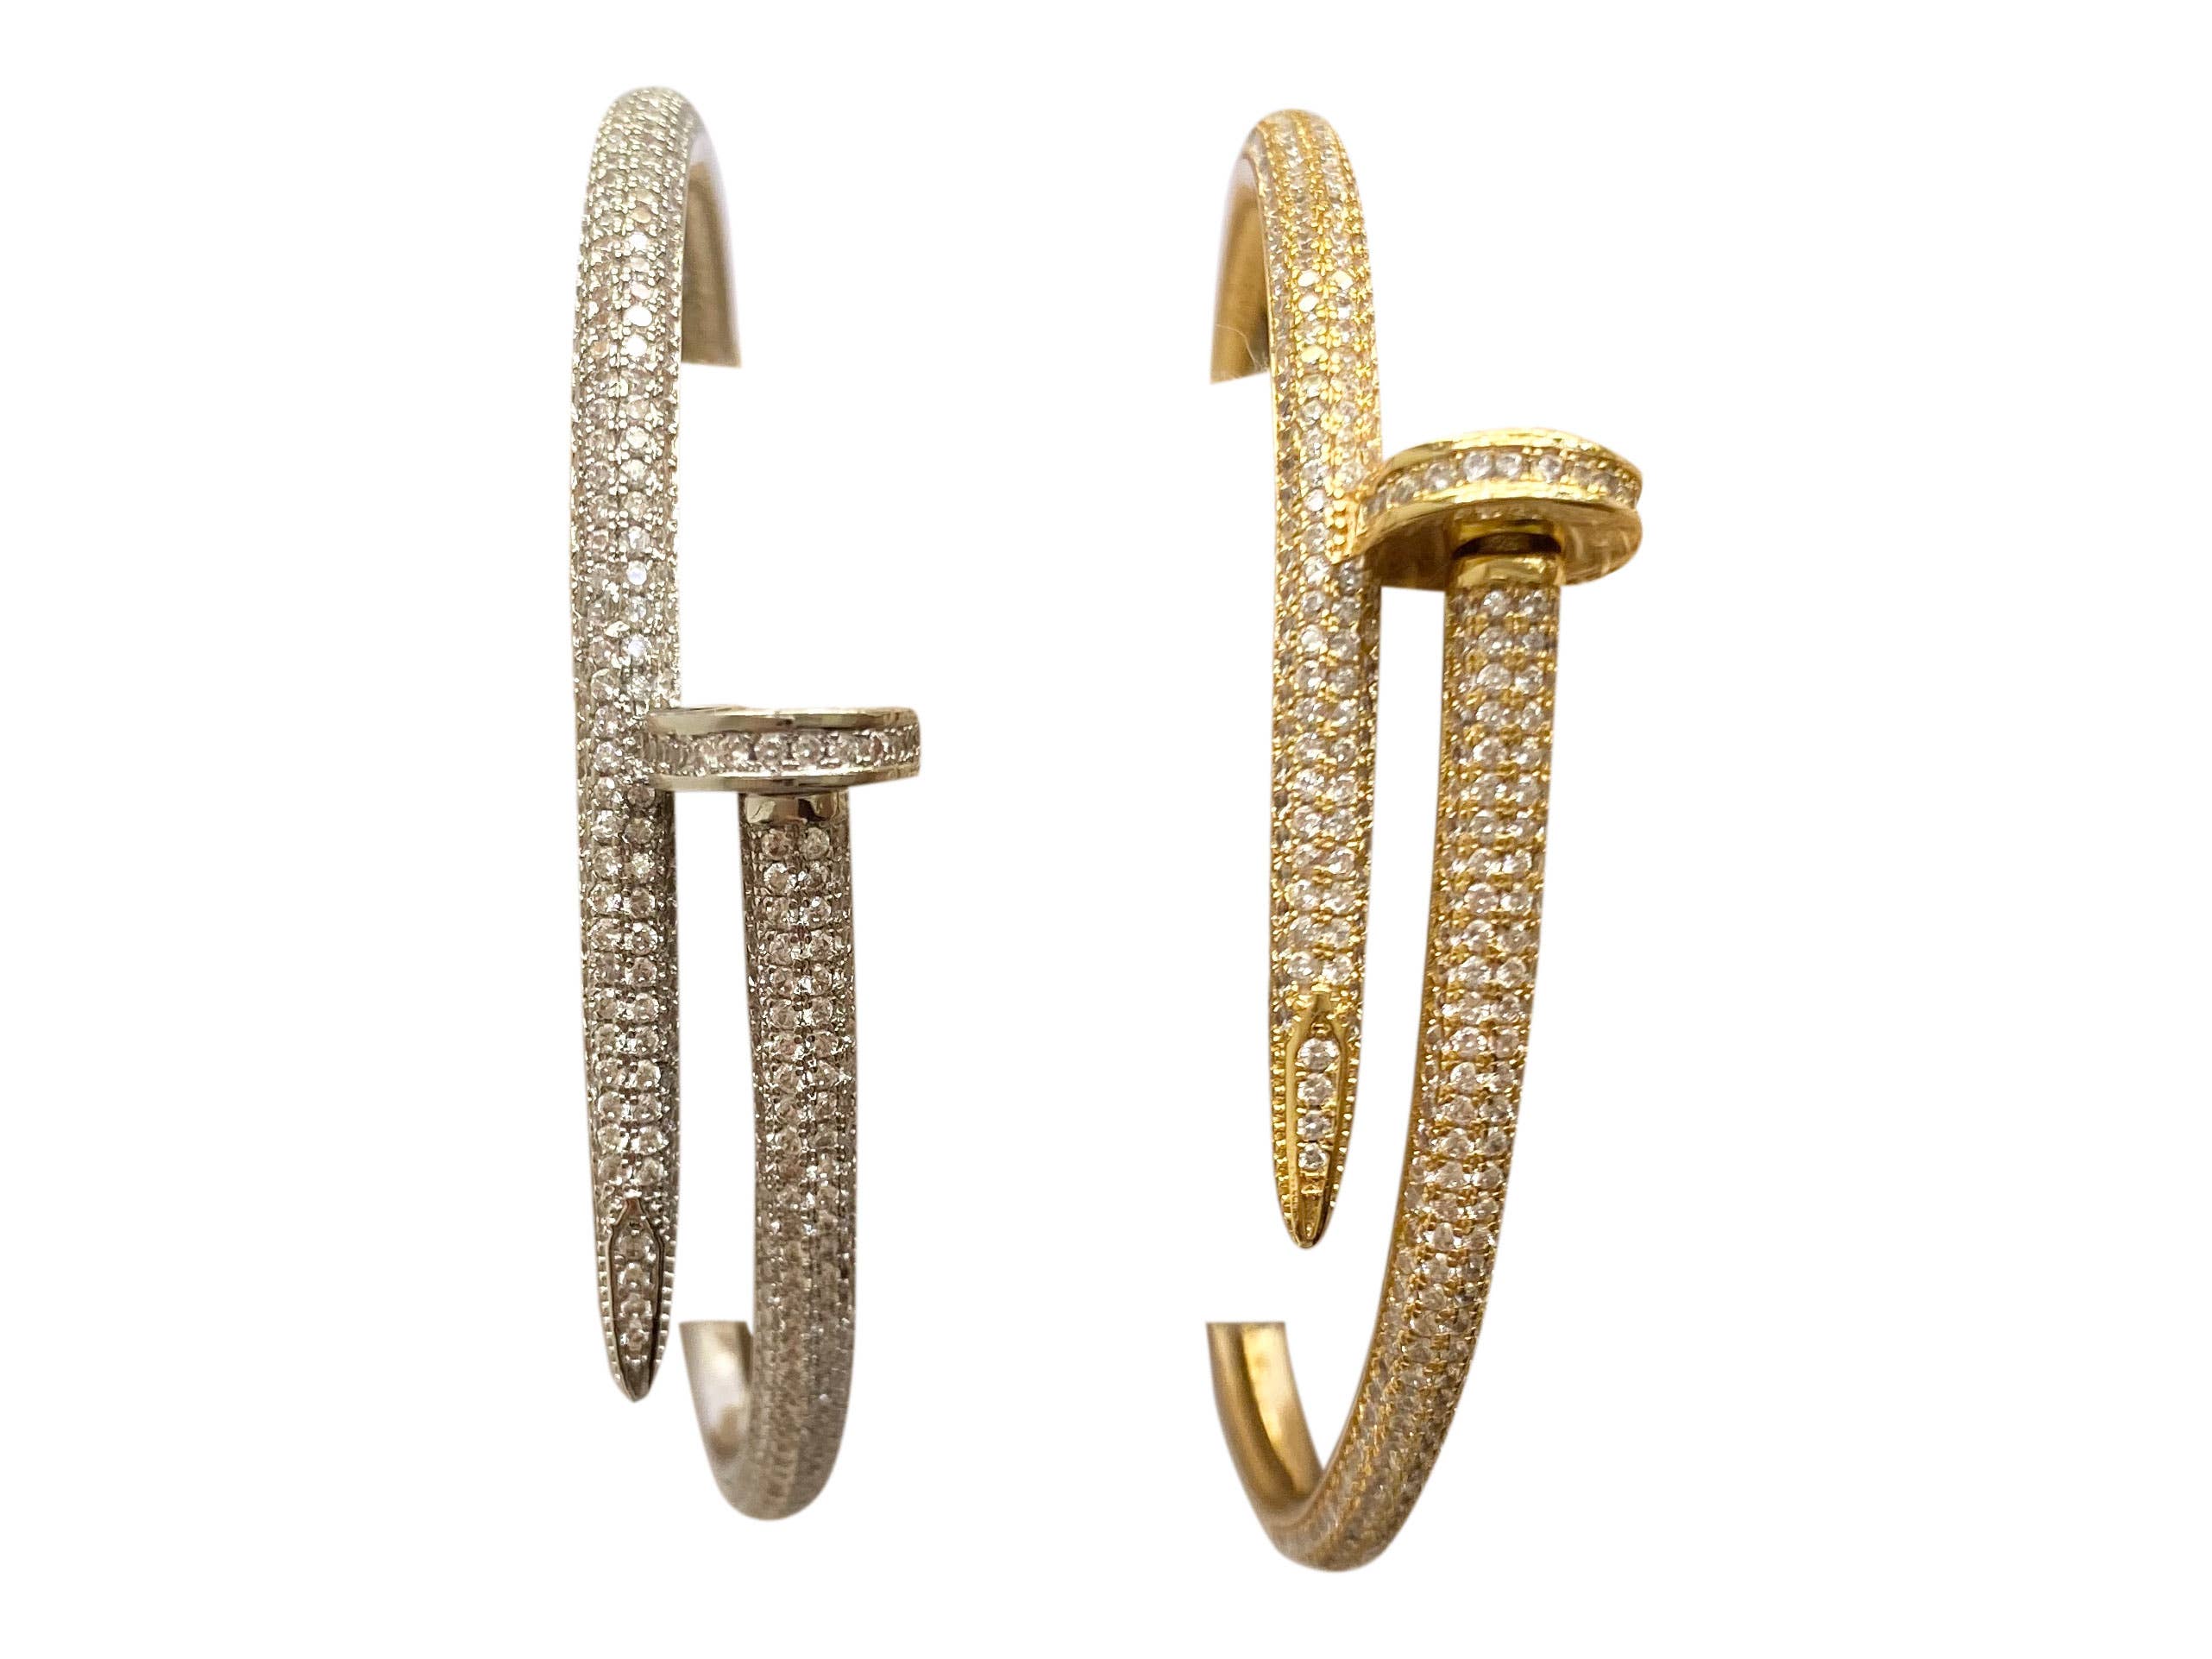 Neu Damen Armband Mode Gold Metall Kette Rot Farbe Bling Blume Charm Anhänger